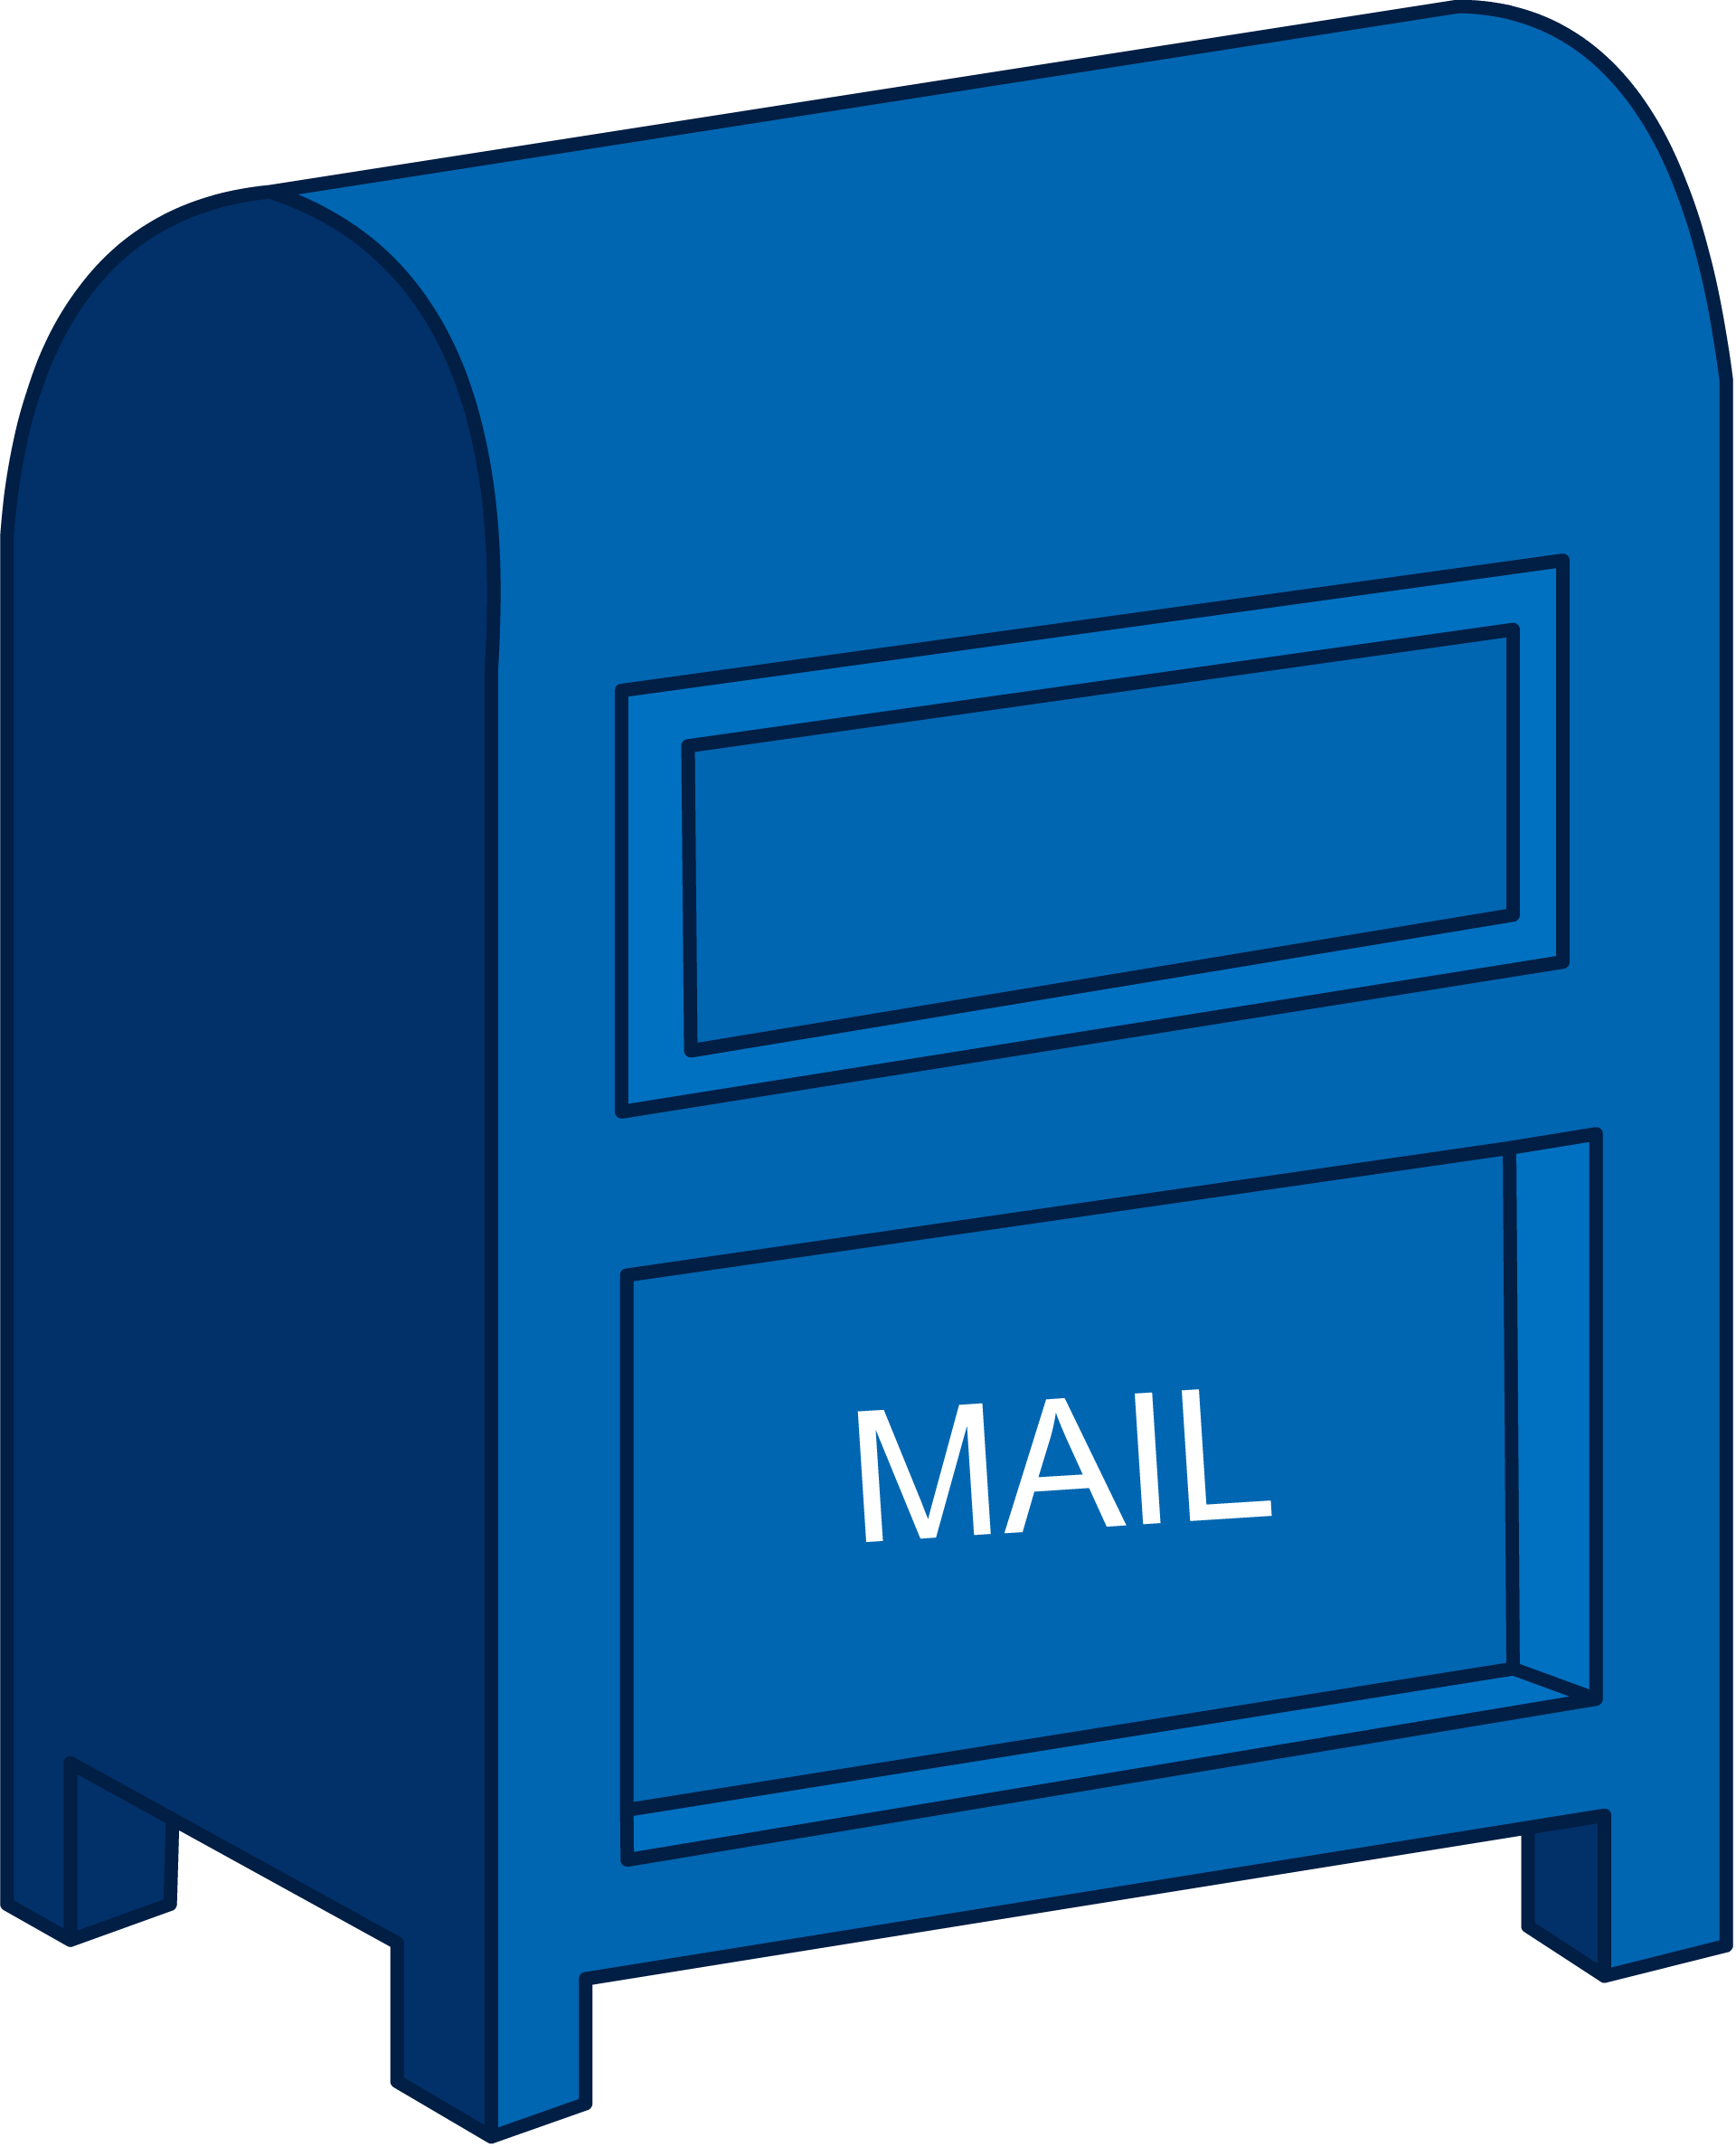 Mailbox hosting. Почтовый ящик. Синий почтовый ящик. Почтовый ящик для детей. Почта ящик.